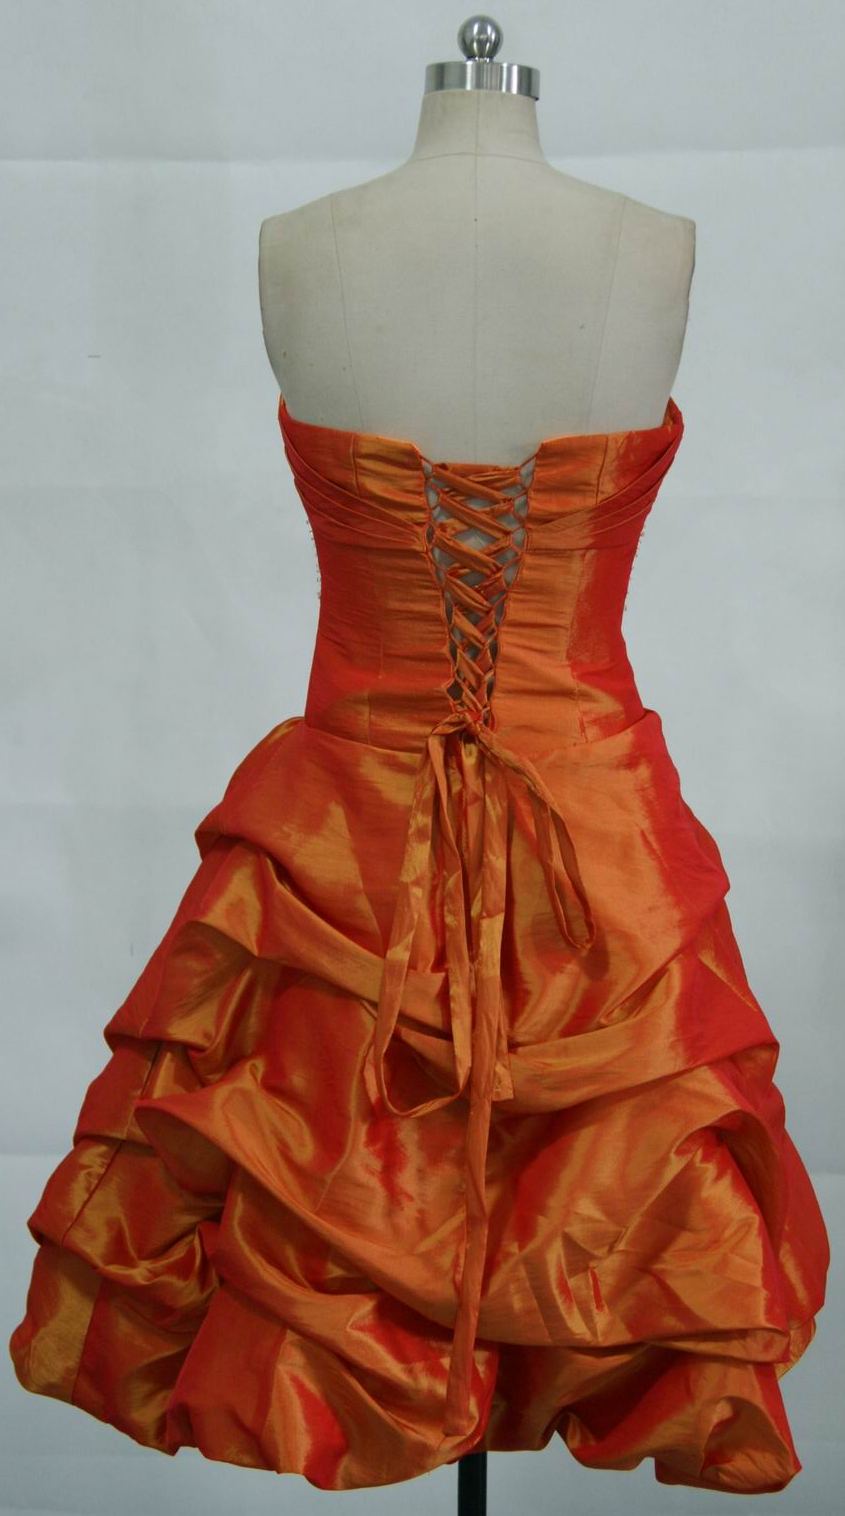 Mandarin orange prom dress with lace up back